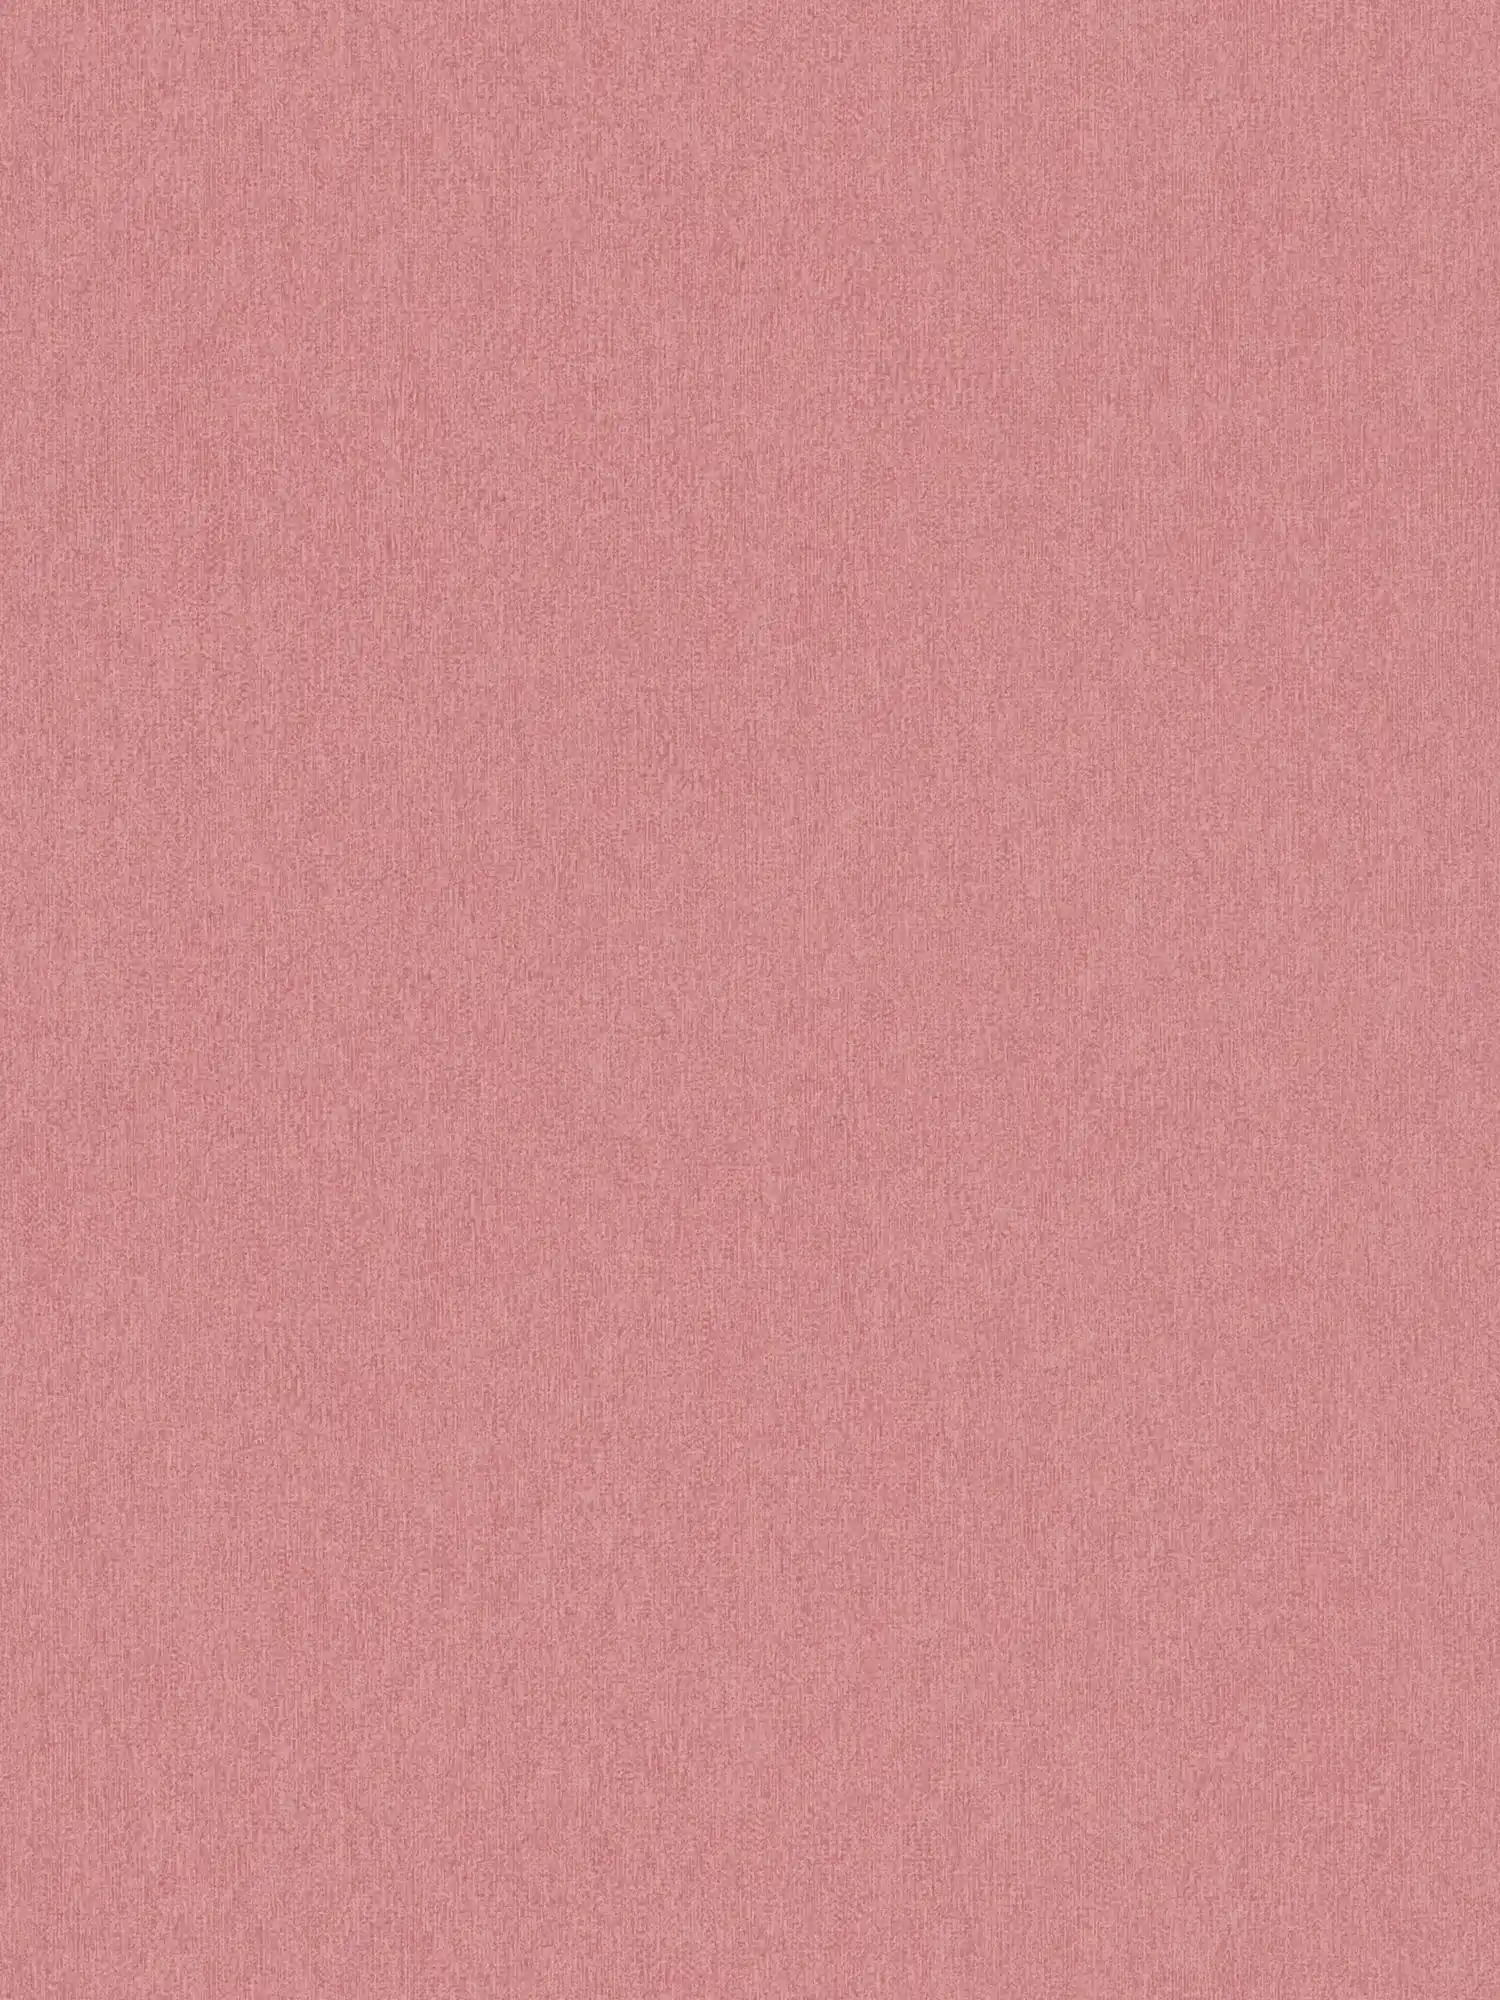 Papel pintado no tejido liso y mate con estructura - rosa
